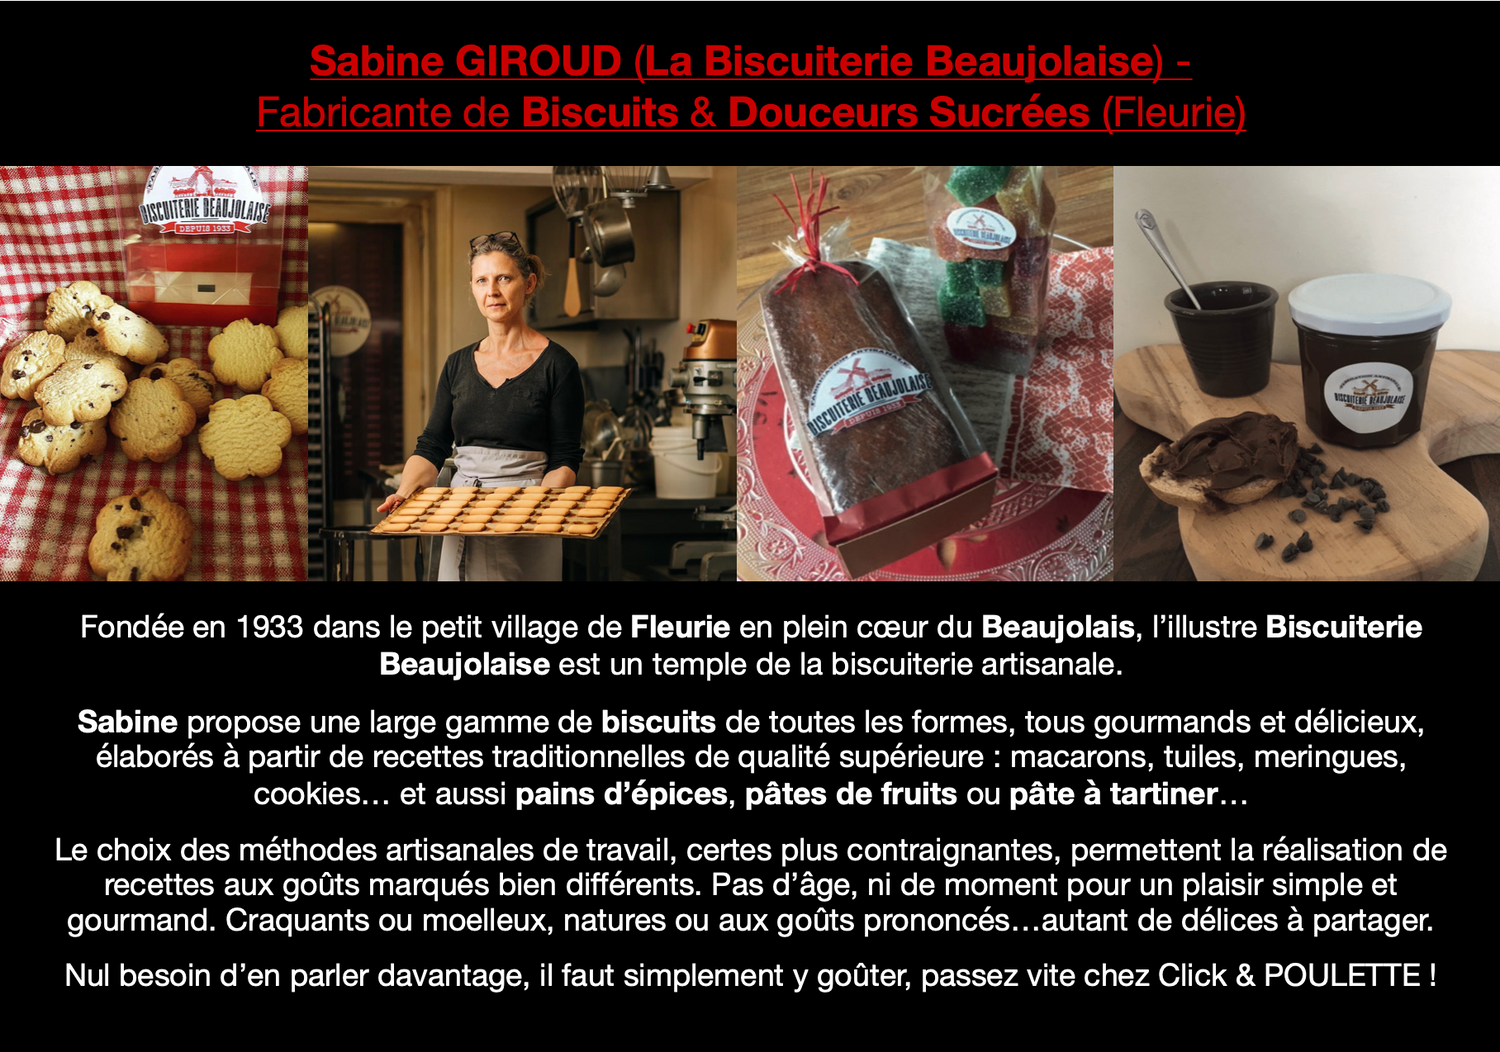 Sabine GIROUD (La Biscuiterie Beaujolaise) - Fabricante de Biscuits & Douceurs Sucrées (Fleurie). Sabine propose une large gamme de biscuits de toutes les formes, tous gourmands et délicieux, élaborés à partir de recettes traditionnelles de qualité supérieure : macarons, tuiles, meringues, cookies… et aussi pains d’épices, pâtes de fruits ou pâte à tartiner…